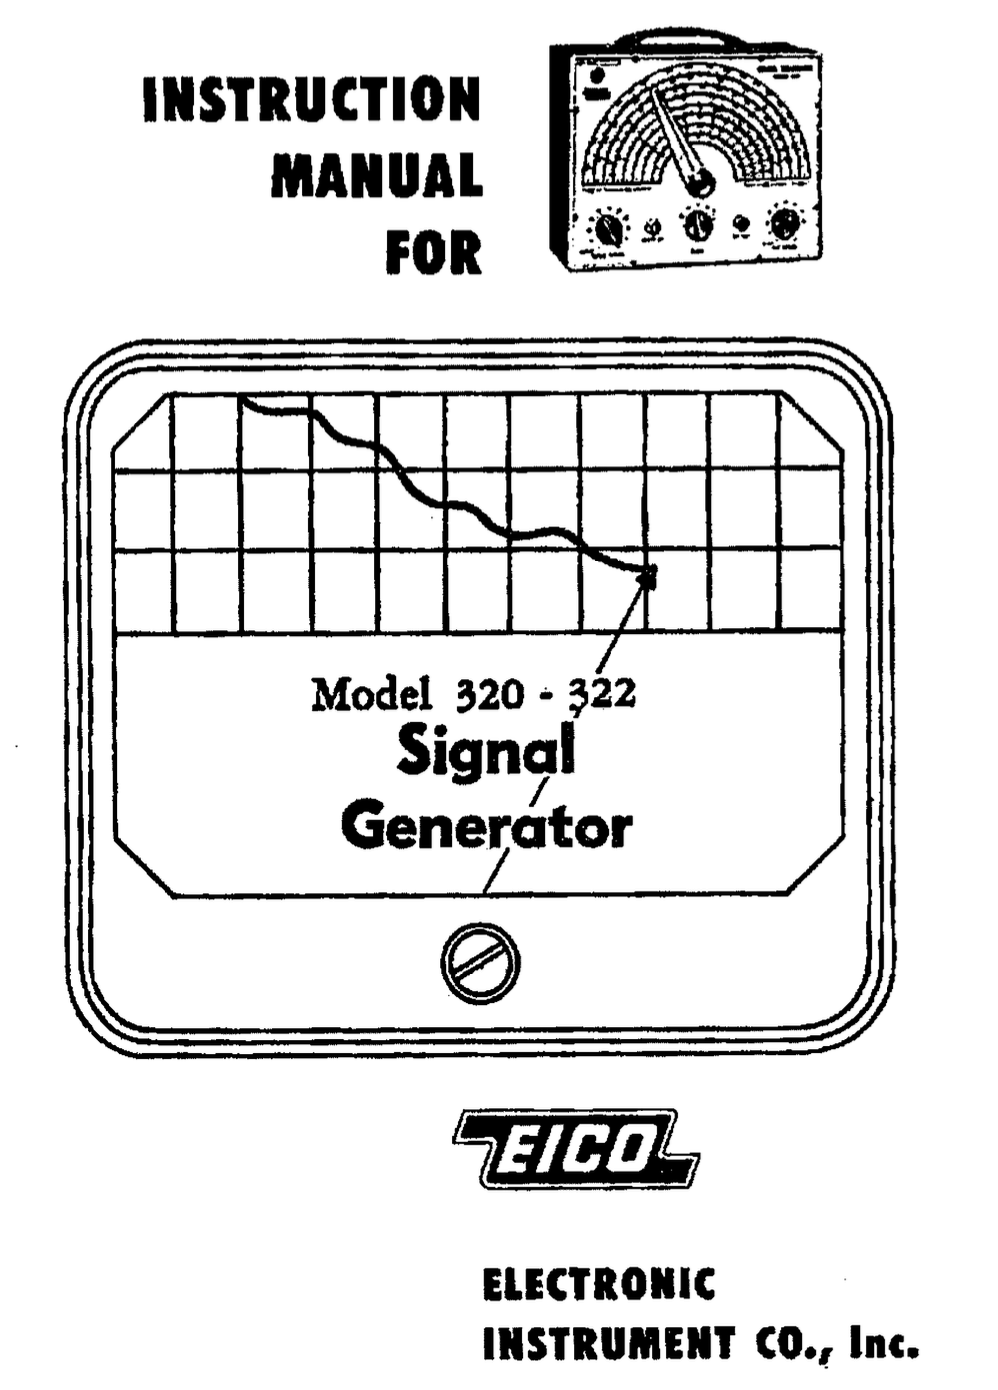 EICO 322 - Instruction Manual 2